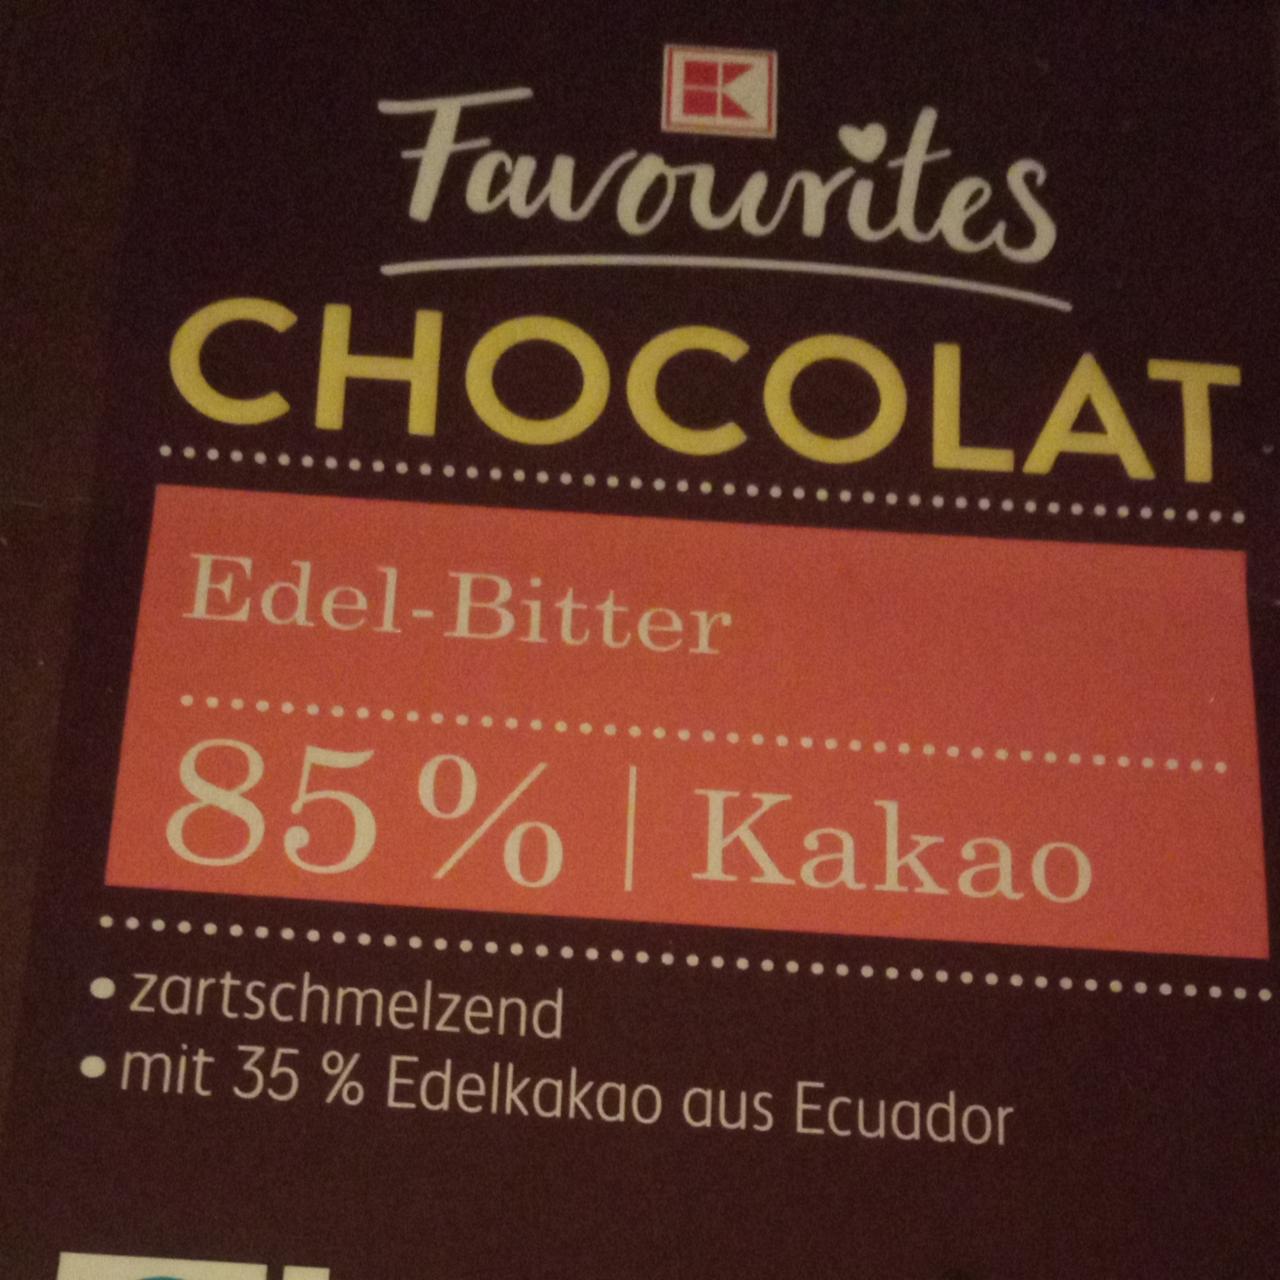 Zdjęcia - Chocolat Edel-Bitter 85% kakao K-Favourites